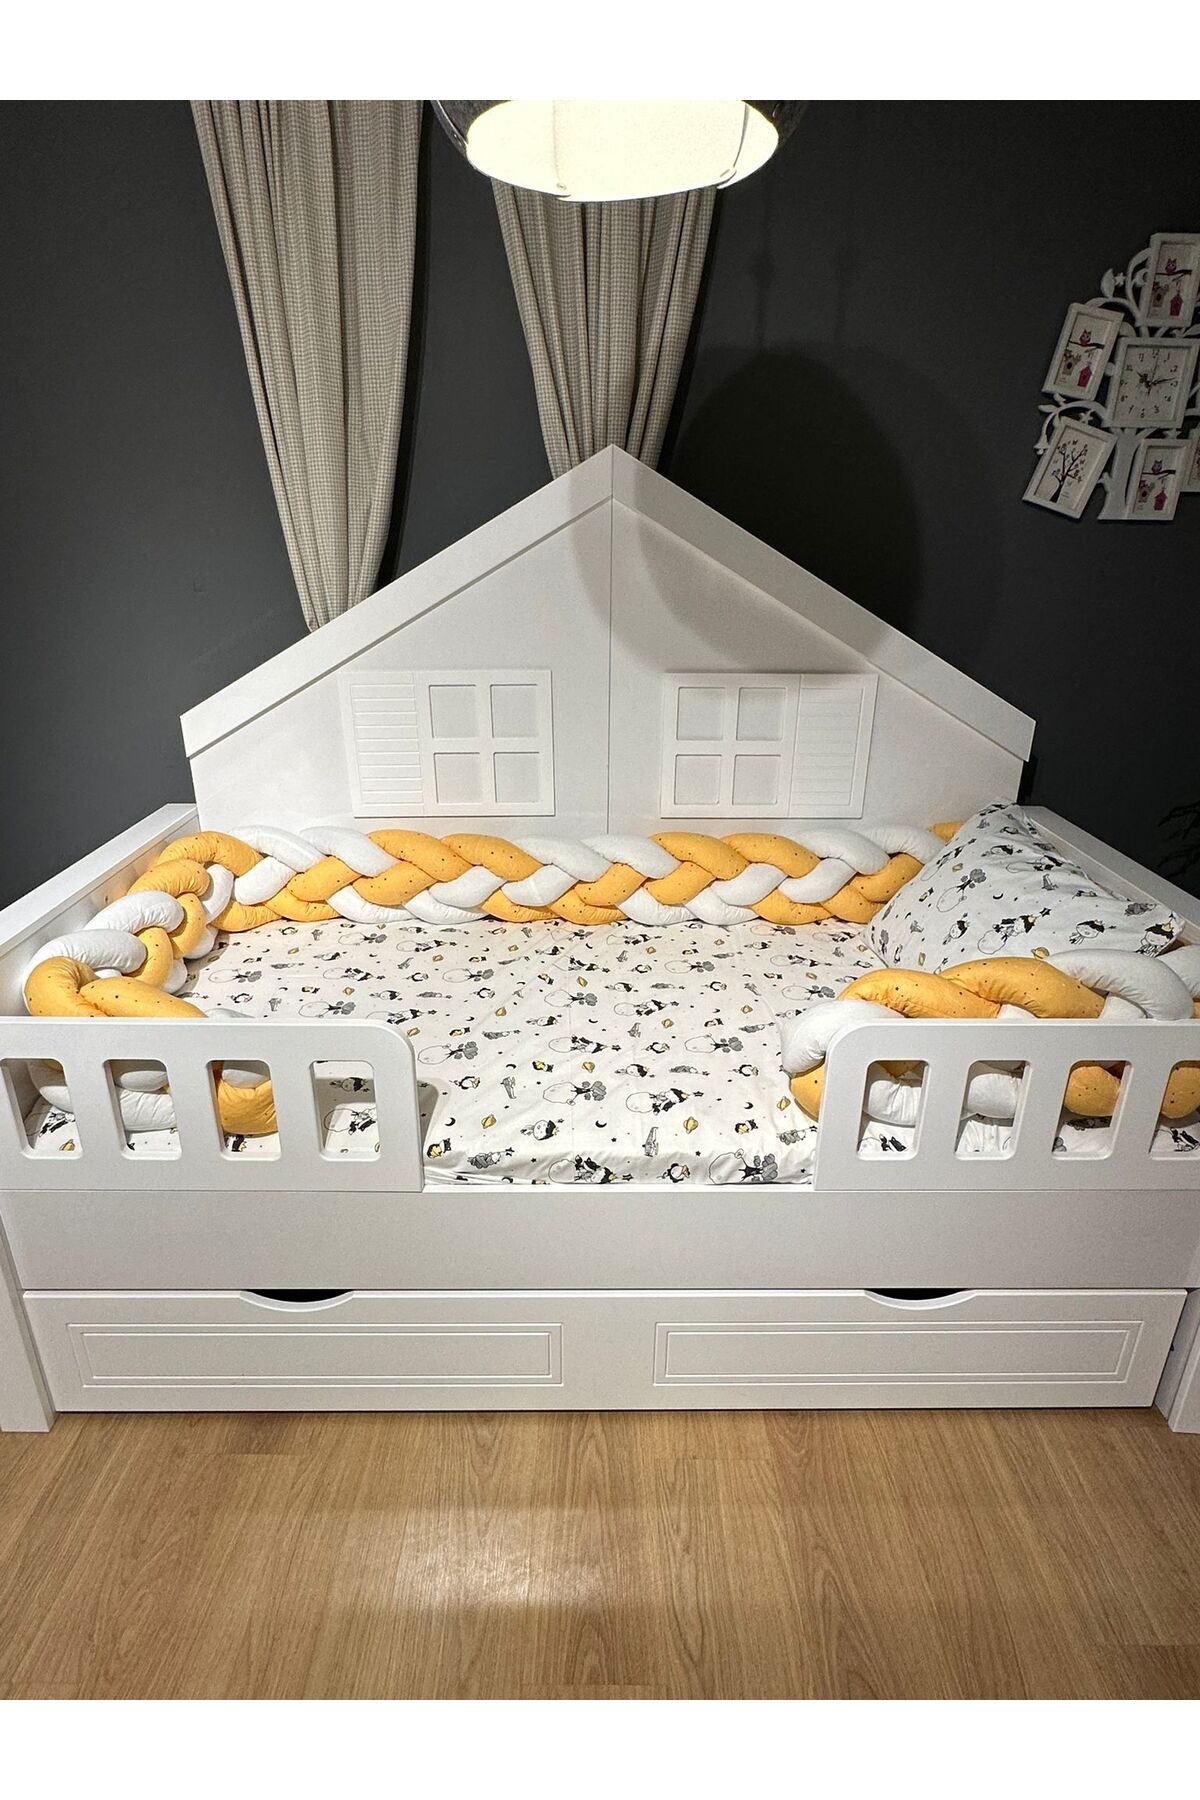 ilknur bebe Cuteboy 4'lü Örgü Kenarlıklı Uyku Seti, 90x190cm Çocuk Karyola Montessori Yataklar İle Uyumlu